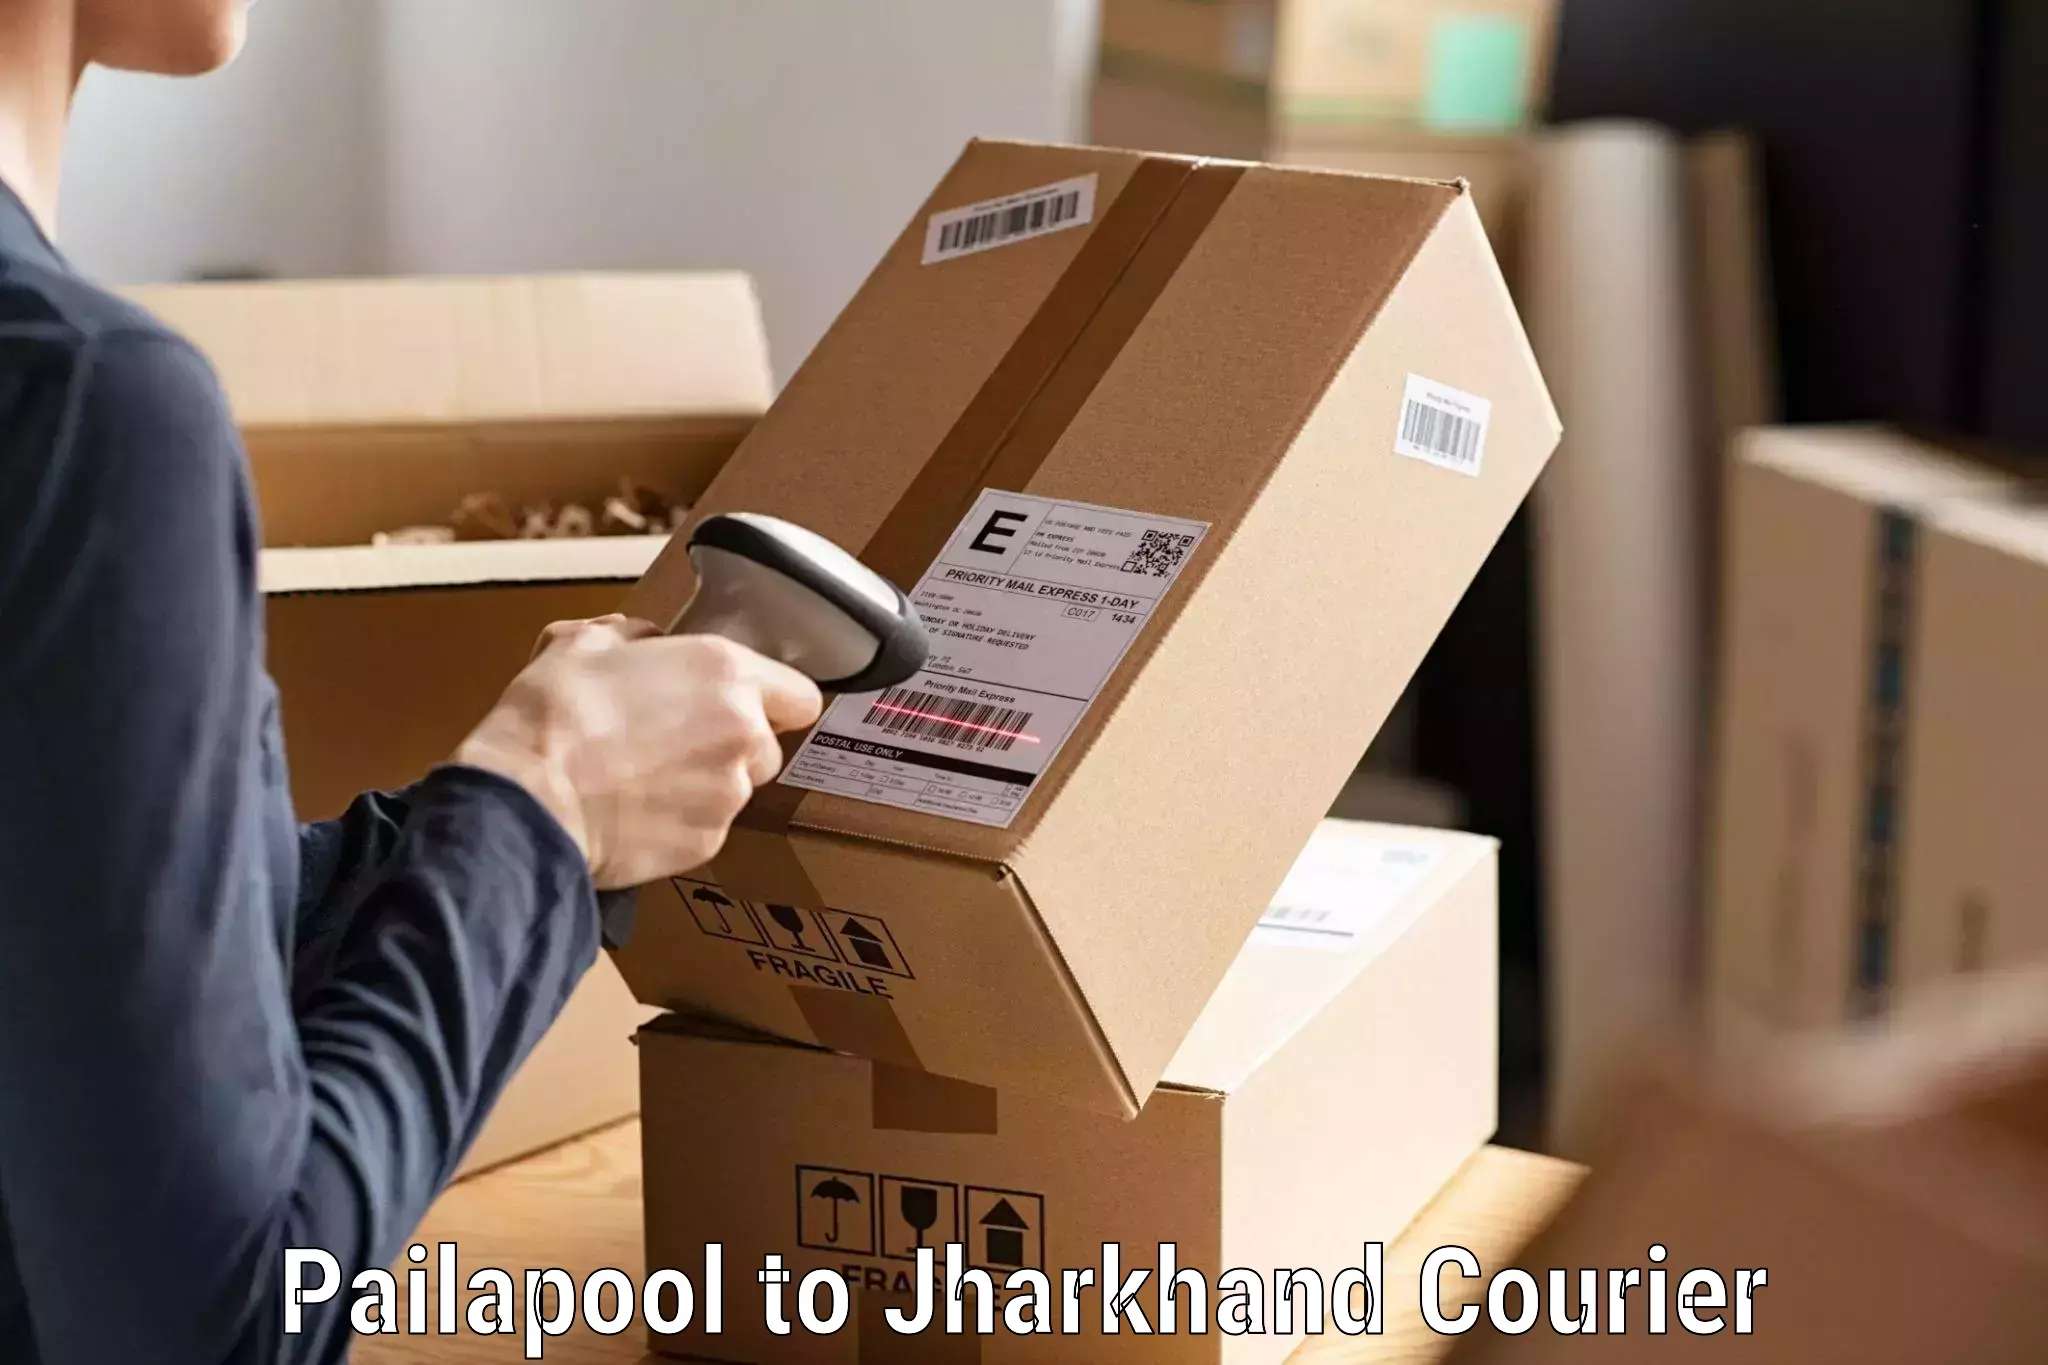 Efficient parcel service Pailapool to Bundu